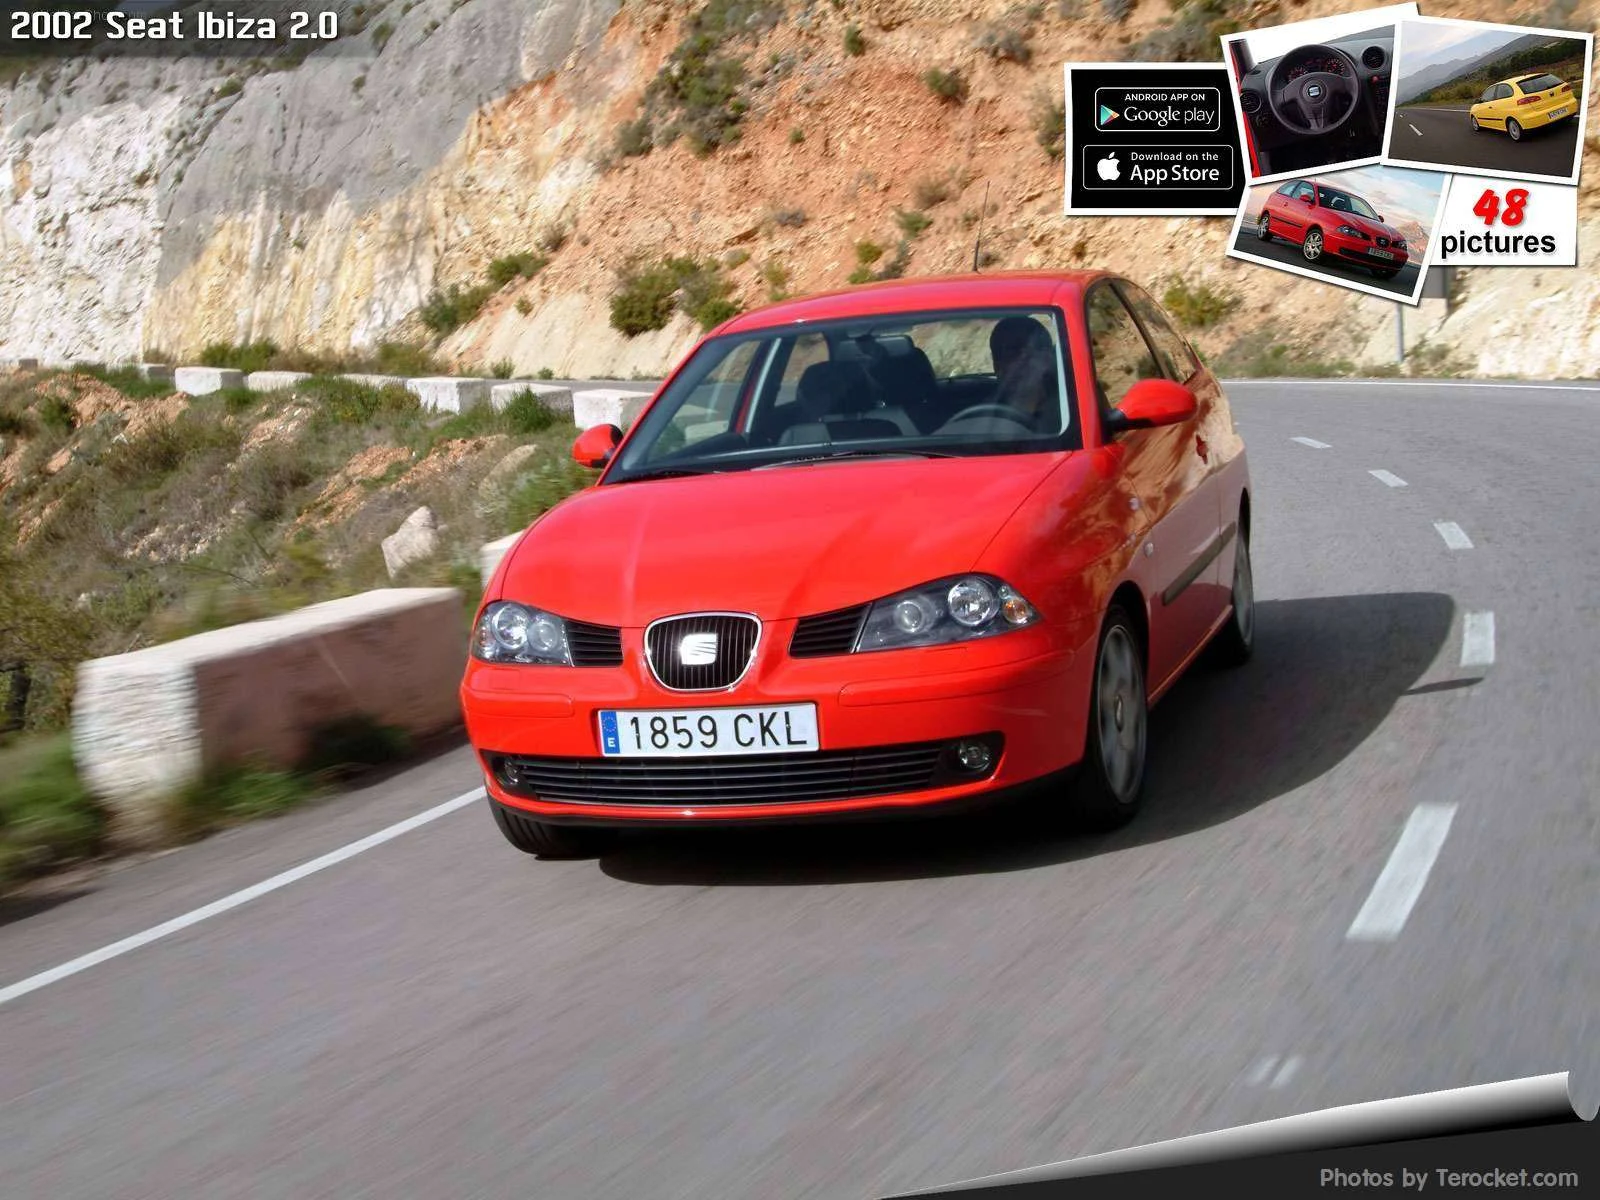 Hình ảnh xe ô tô Seat Ibiza 2.0 2002 & nội ngoại thất